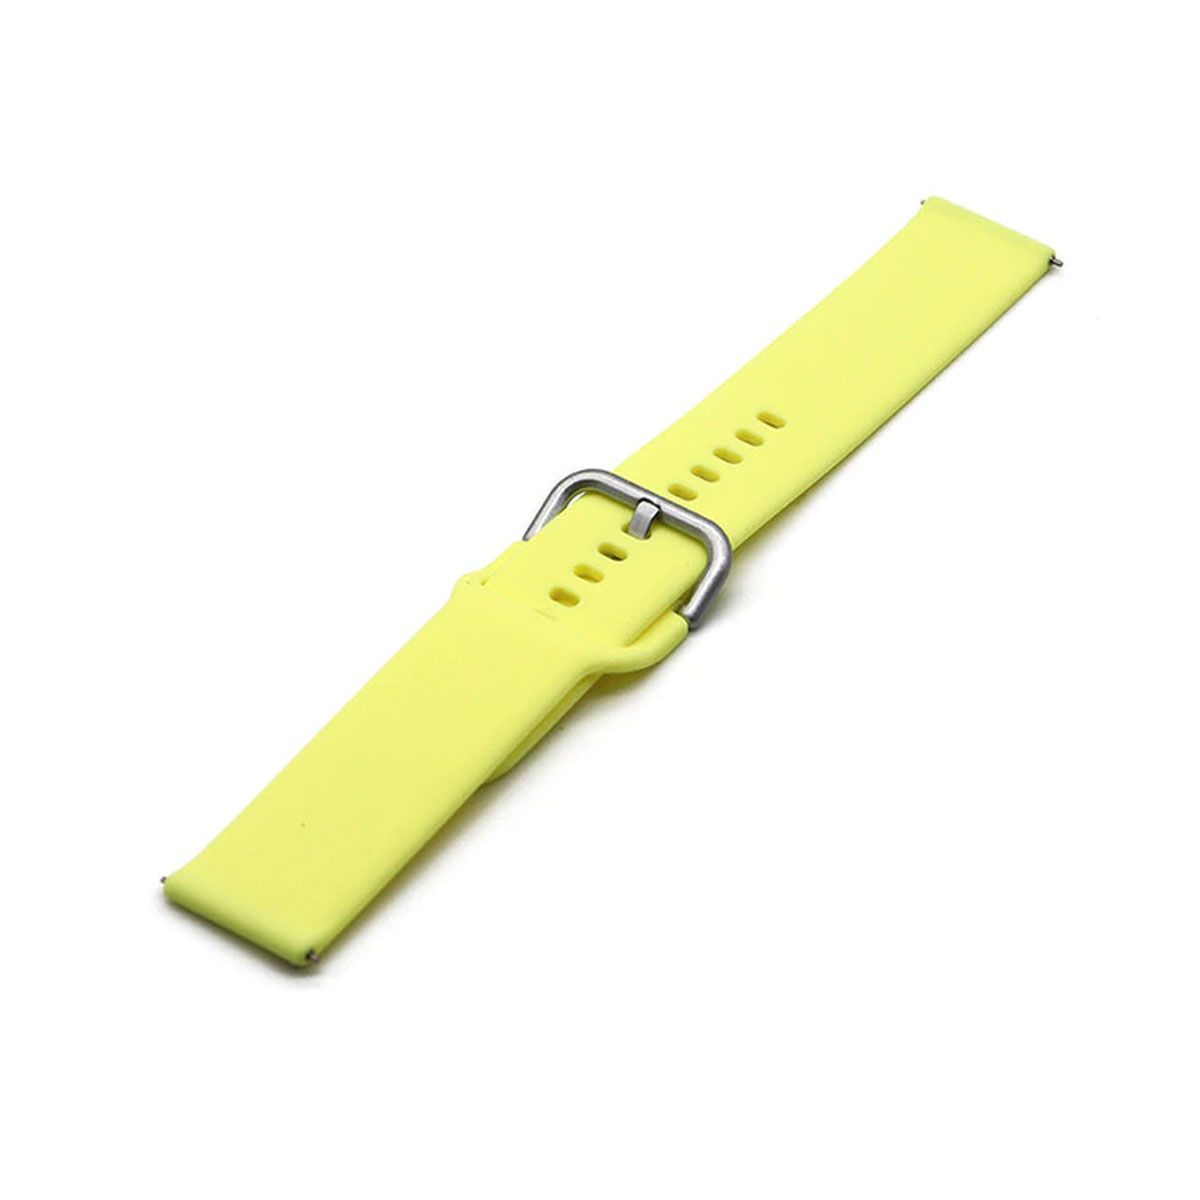 Ремешок для смарт часов универсальный 20 мм для SAMSUNG, XIAOMI, HUAWEI, силикон, цвет желтый